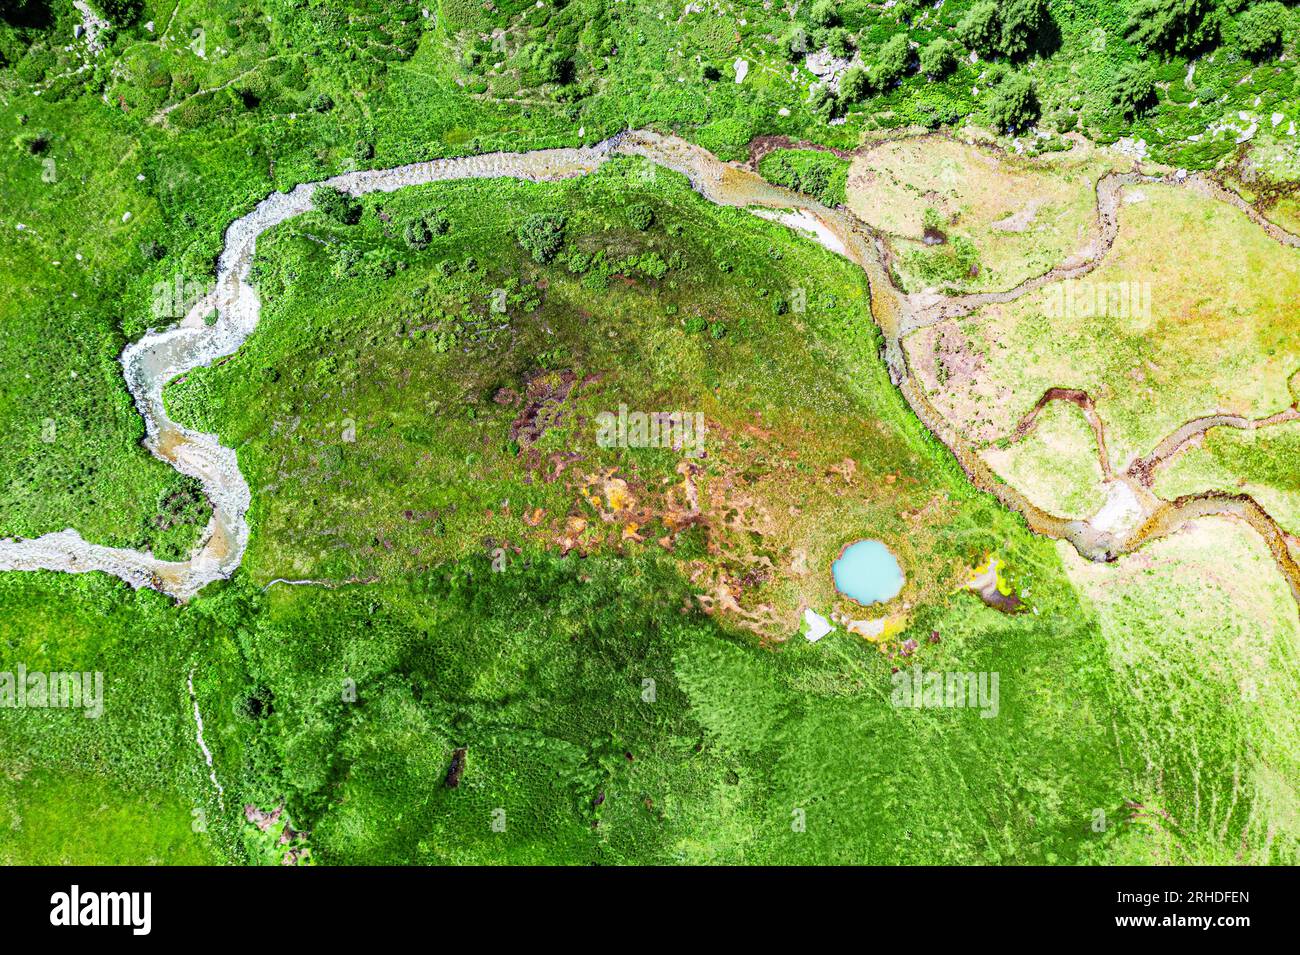 Vue aérienne d'une rivière coulant à proximité Pozza Blu dans le paysage verdoyant, Macolini, Madesimo, Valle Spluga, Valtellina, Lombardie, Italie Banque D'Images